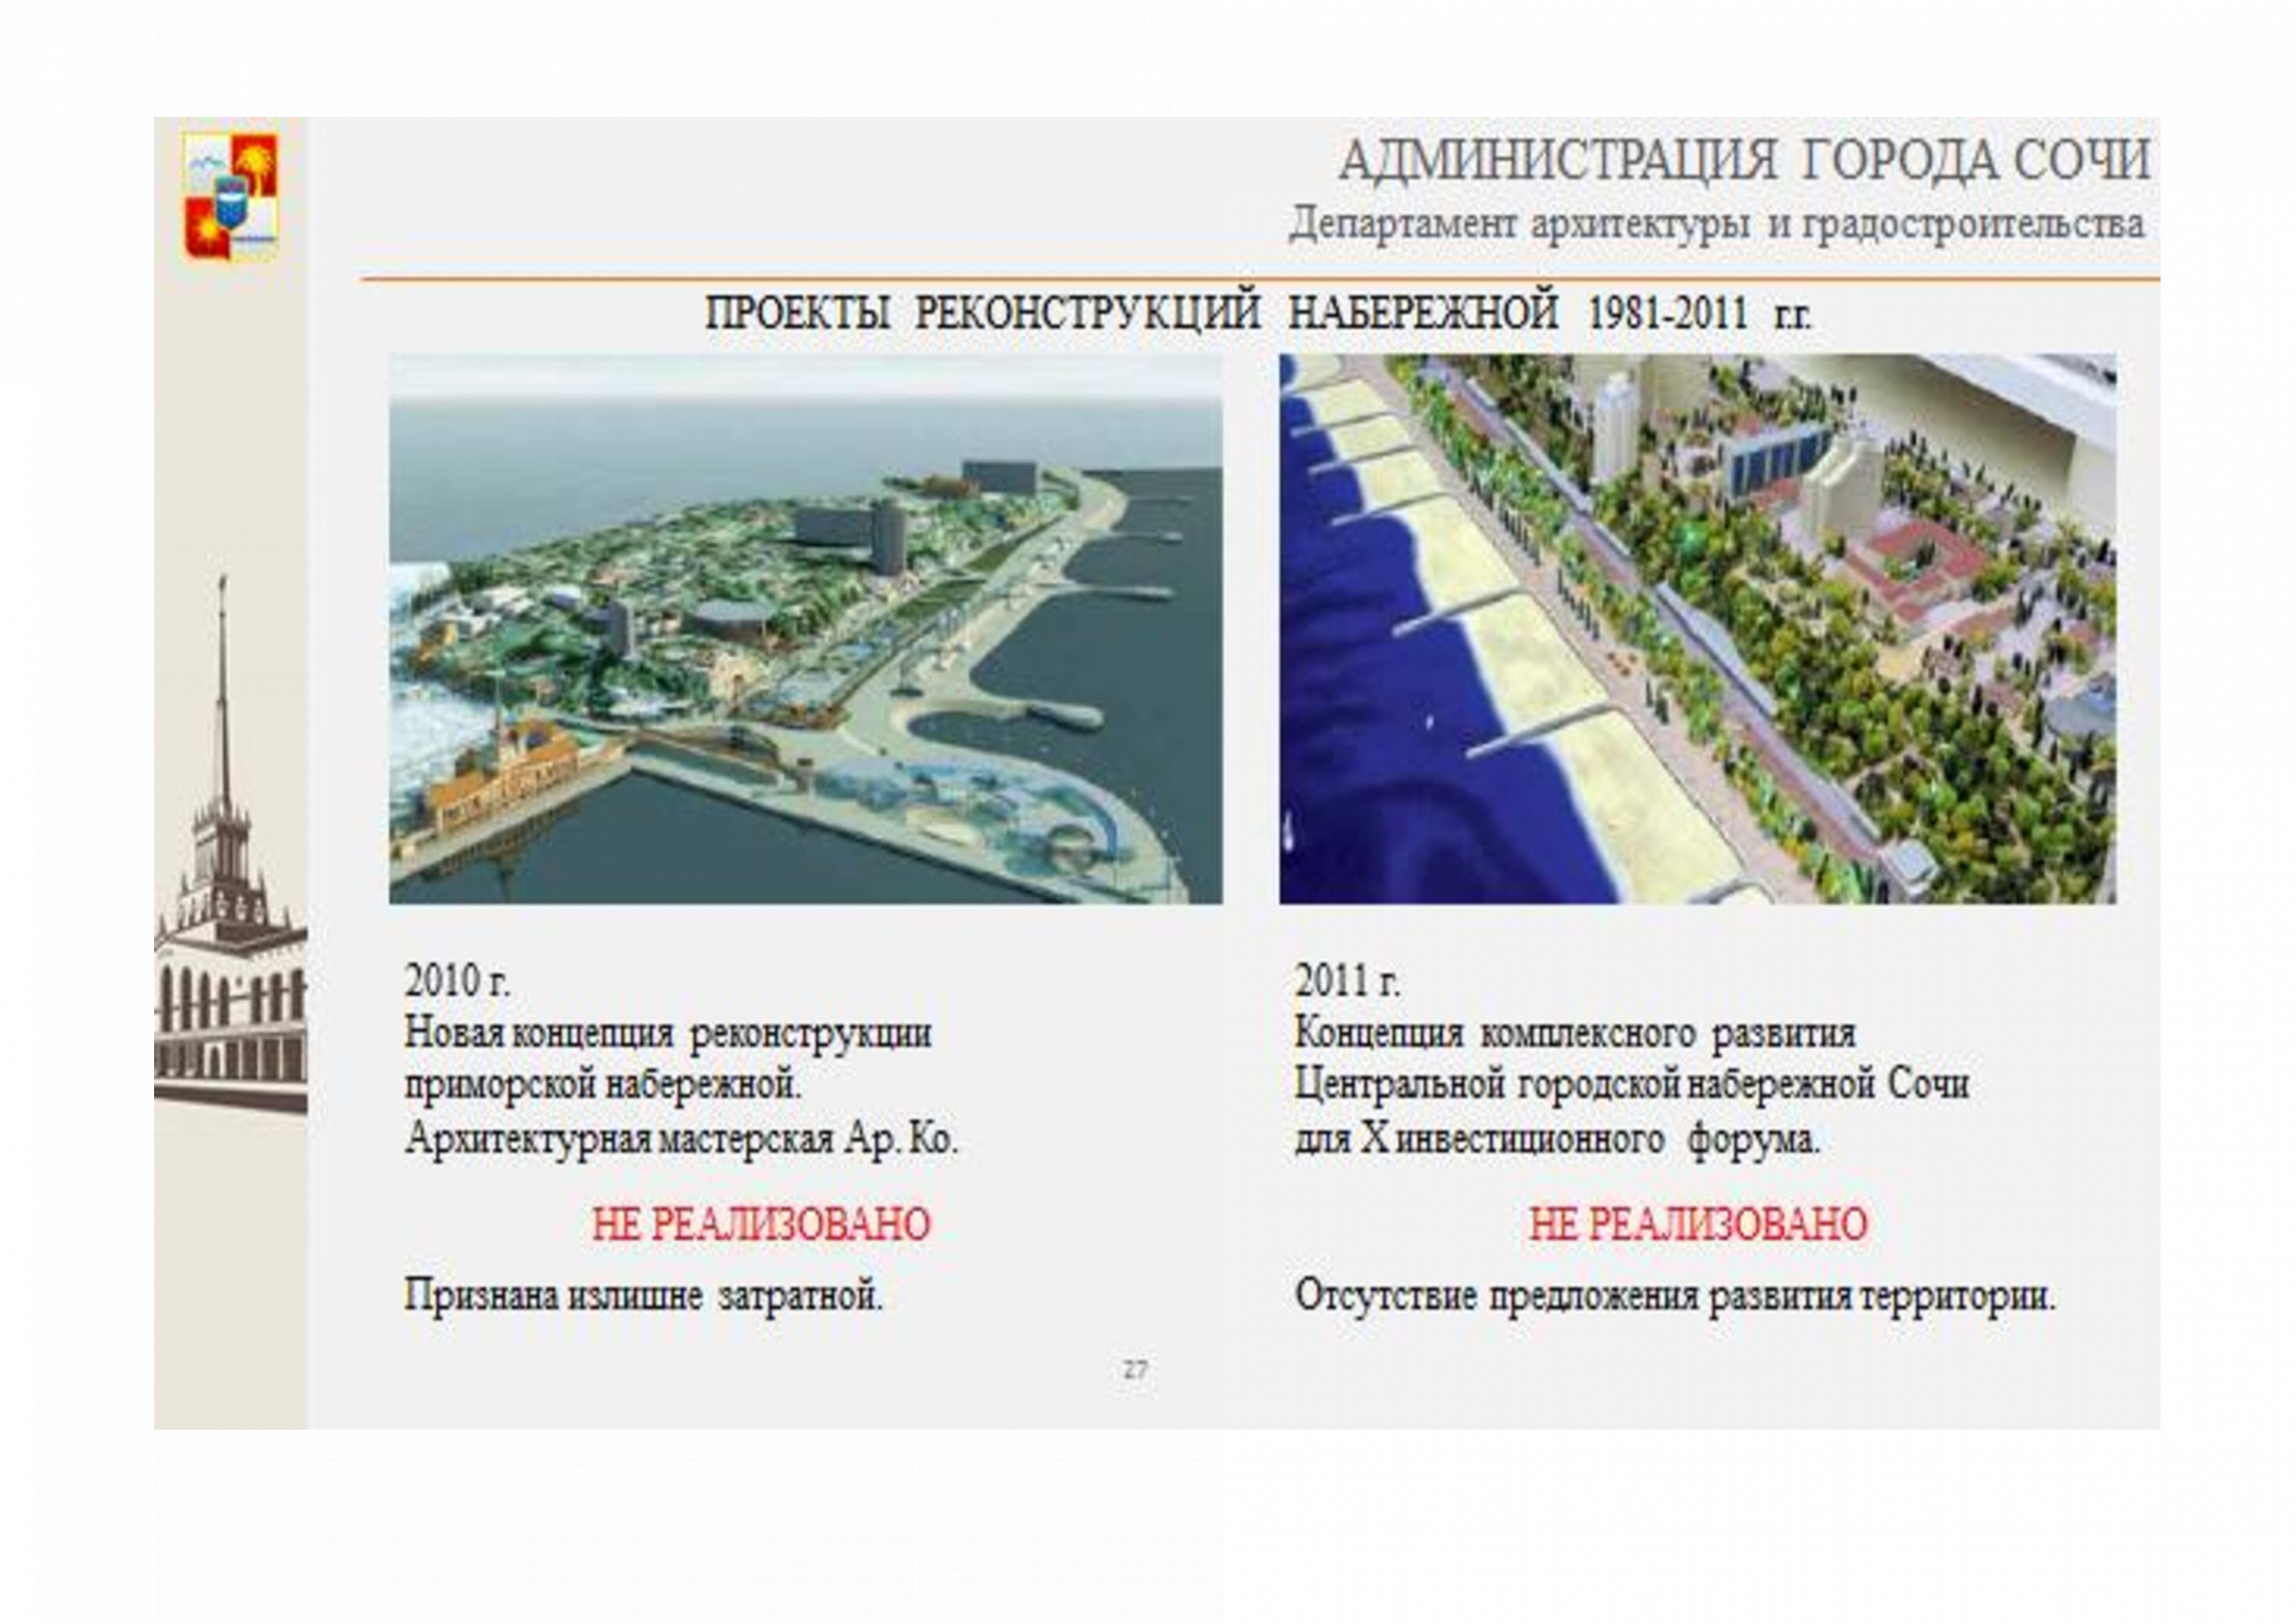 Презентация концепции реконструкции центральной Приморской набережной города Сочи в рамках форума Yugbuild 2022